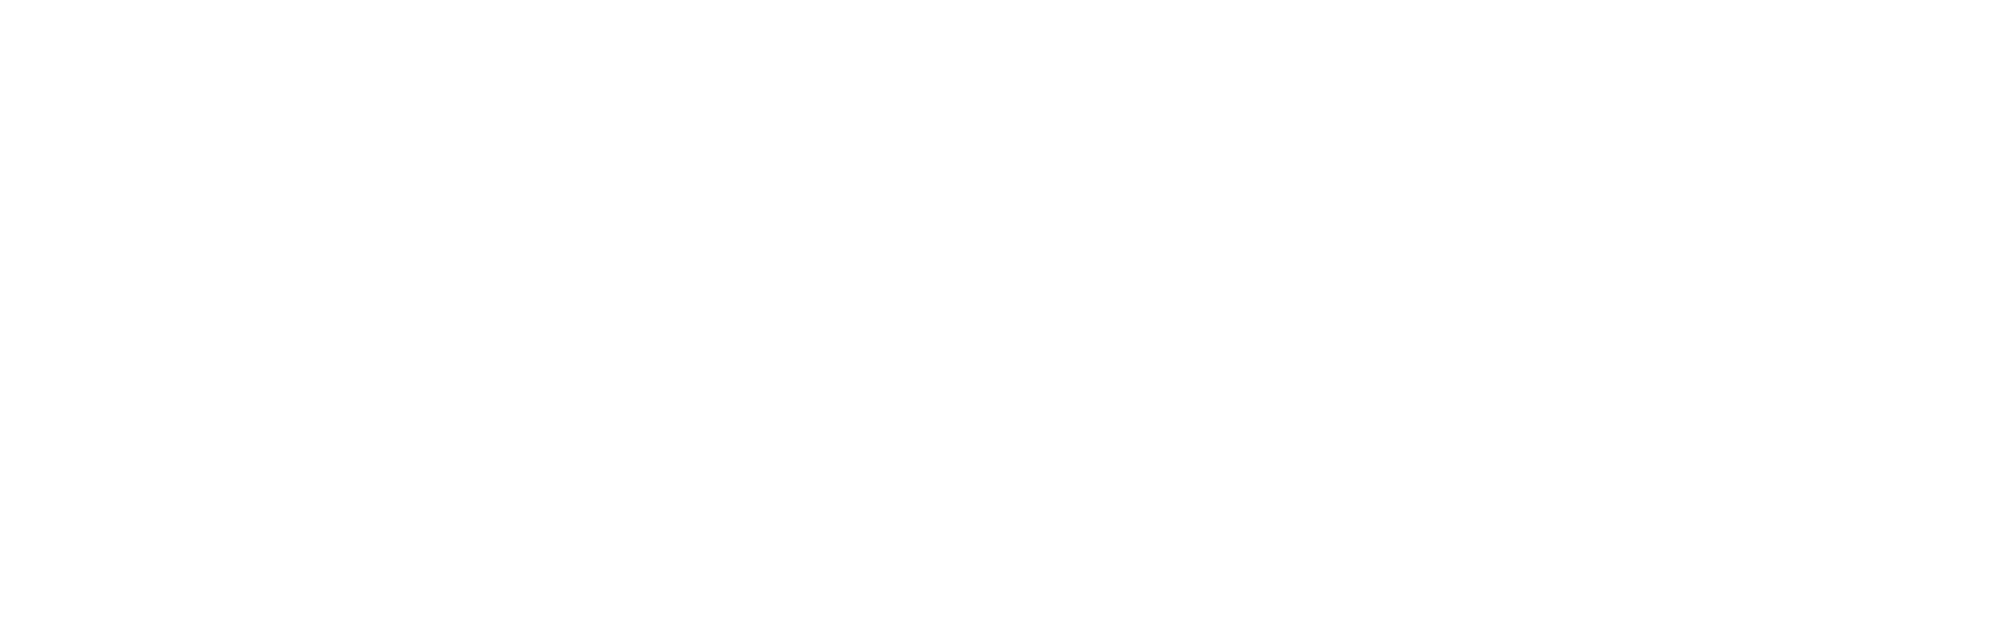 İptal ve İade Politikası - Leather harmonica - Premium handmade leather goods